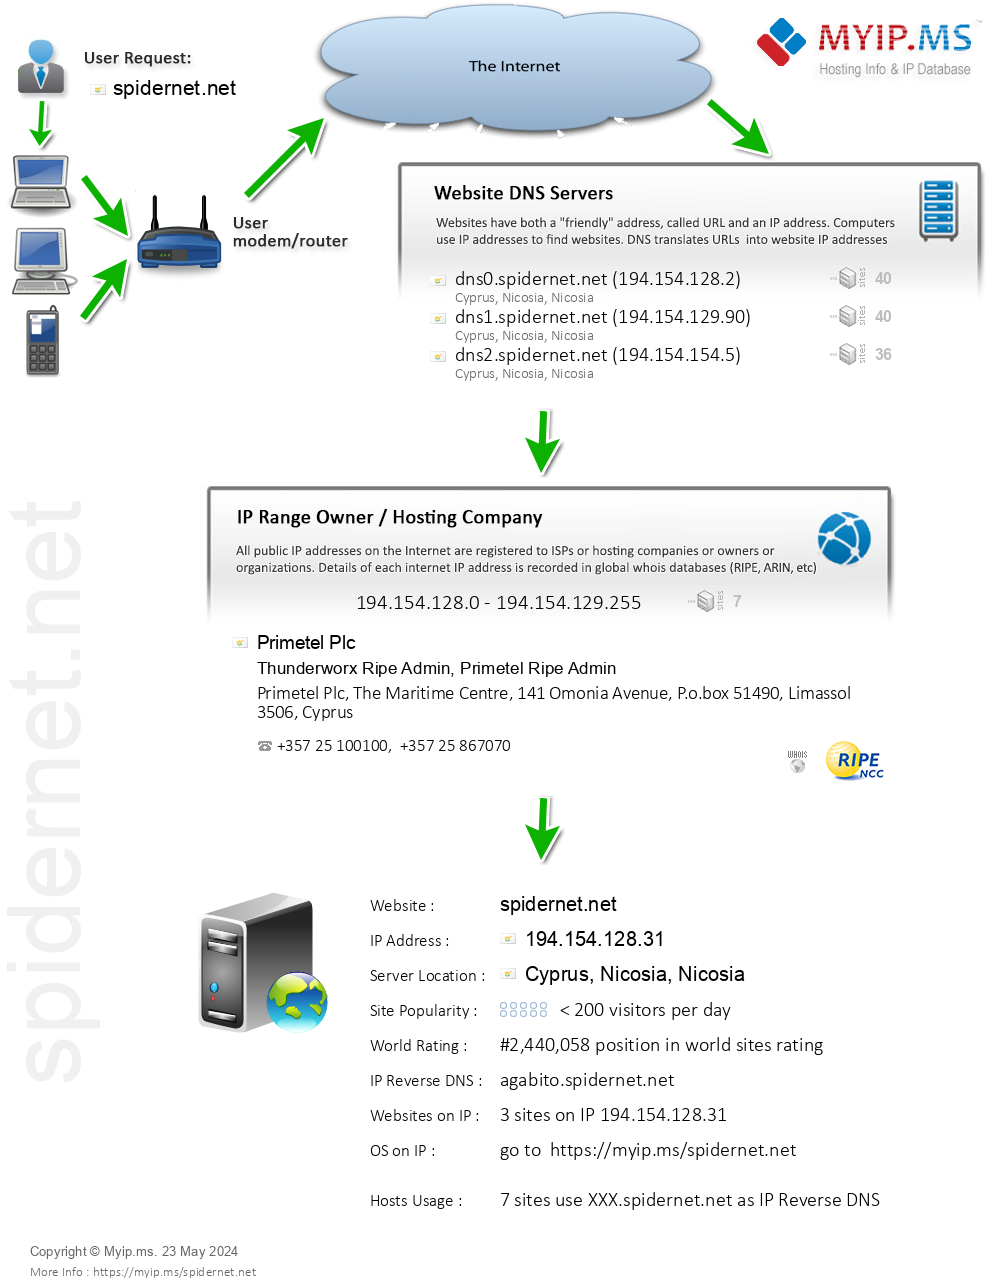 Spidernet.net - Website Hosting Visual IP Diagram